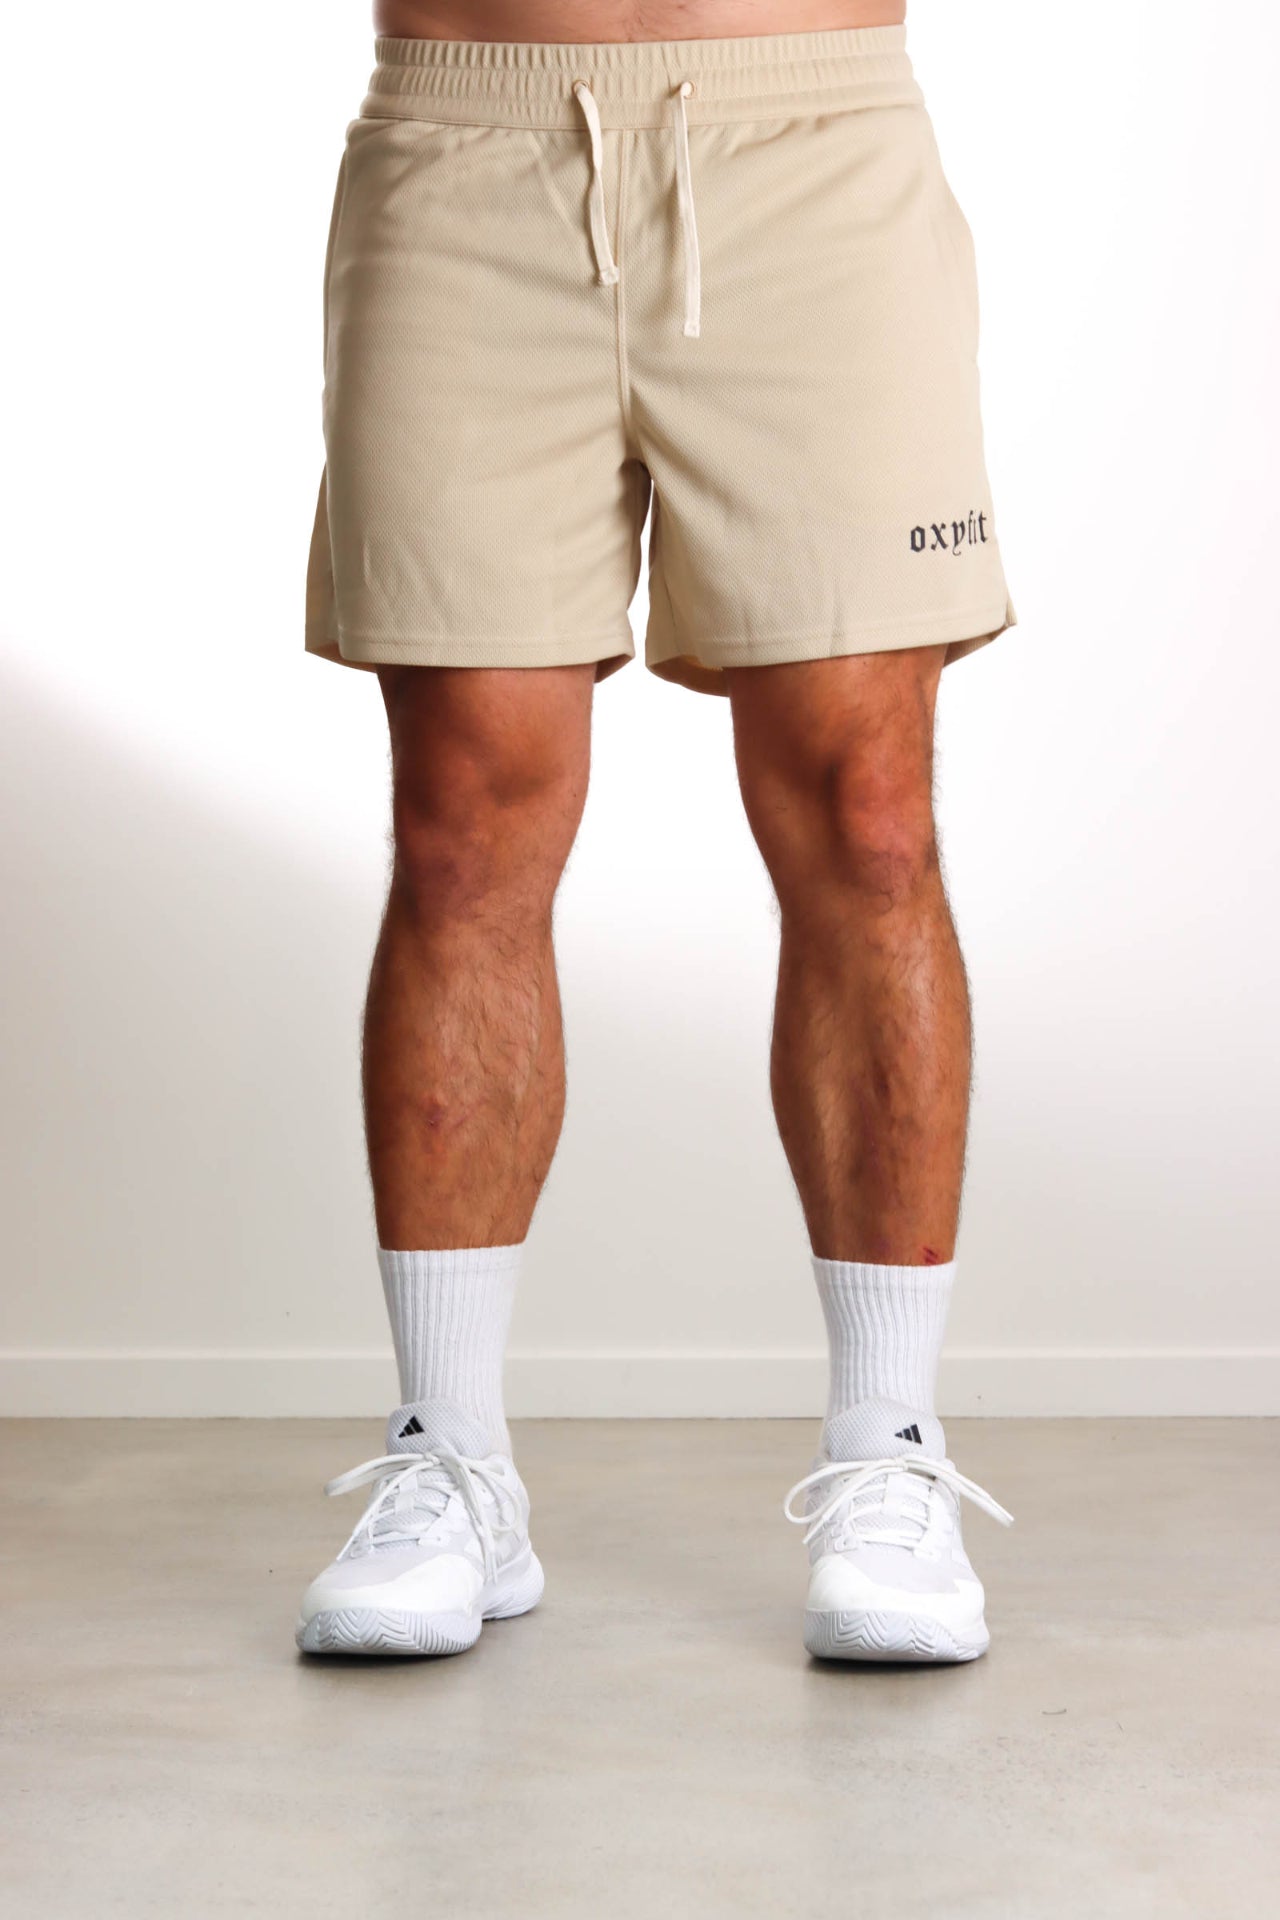 Oxyfit Mens Mesh Shorts - Sand